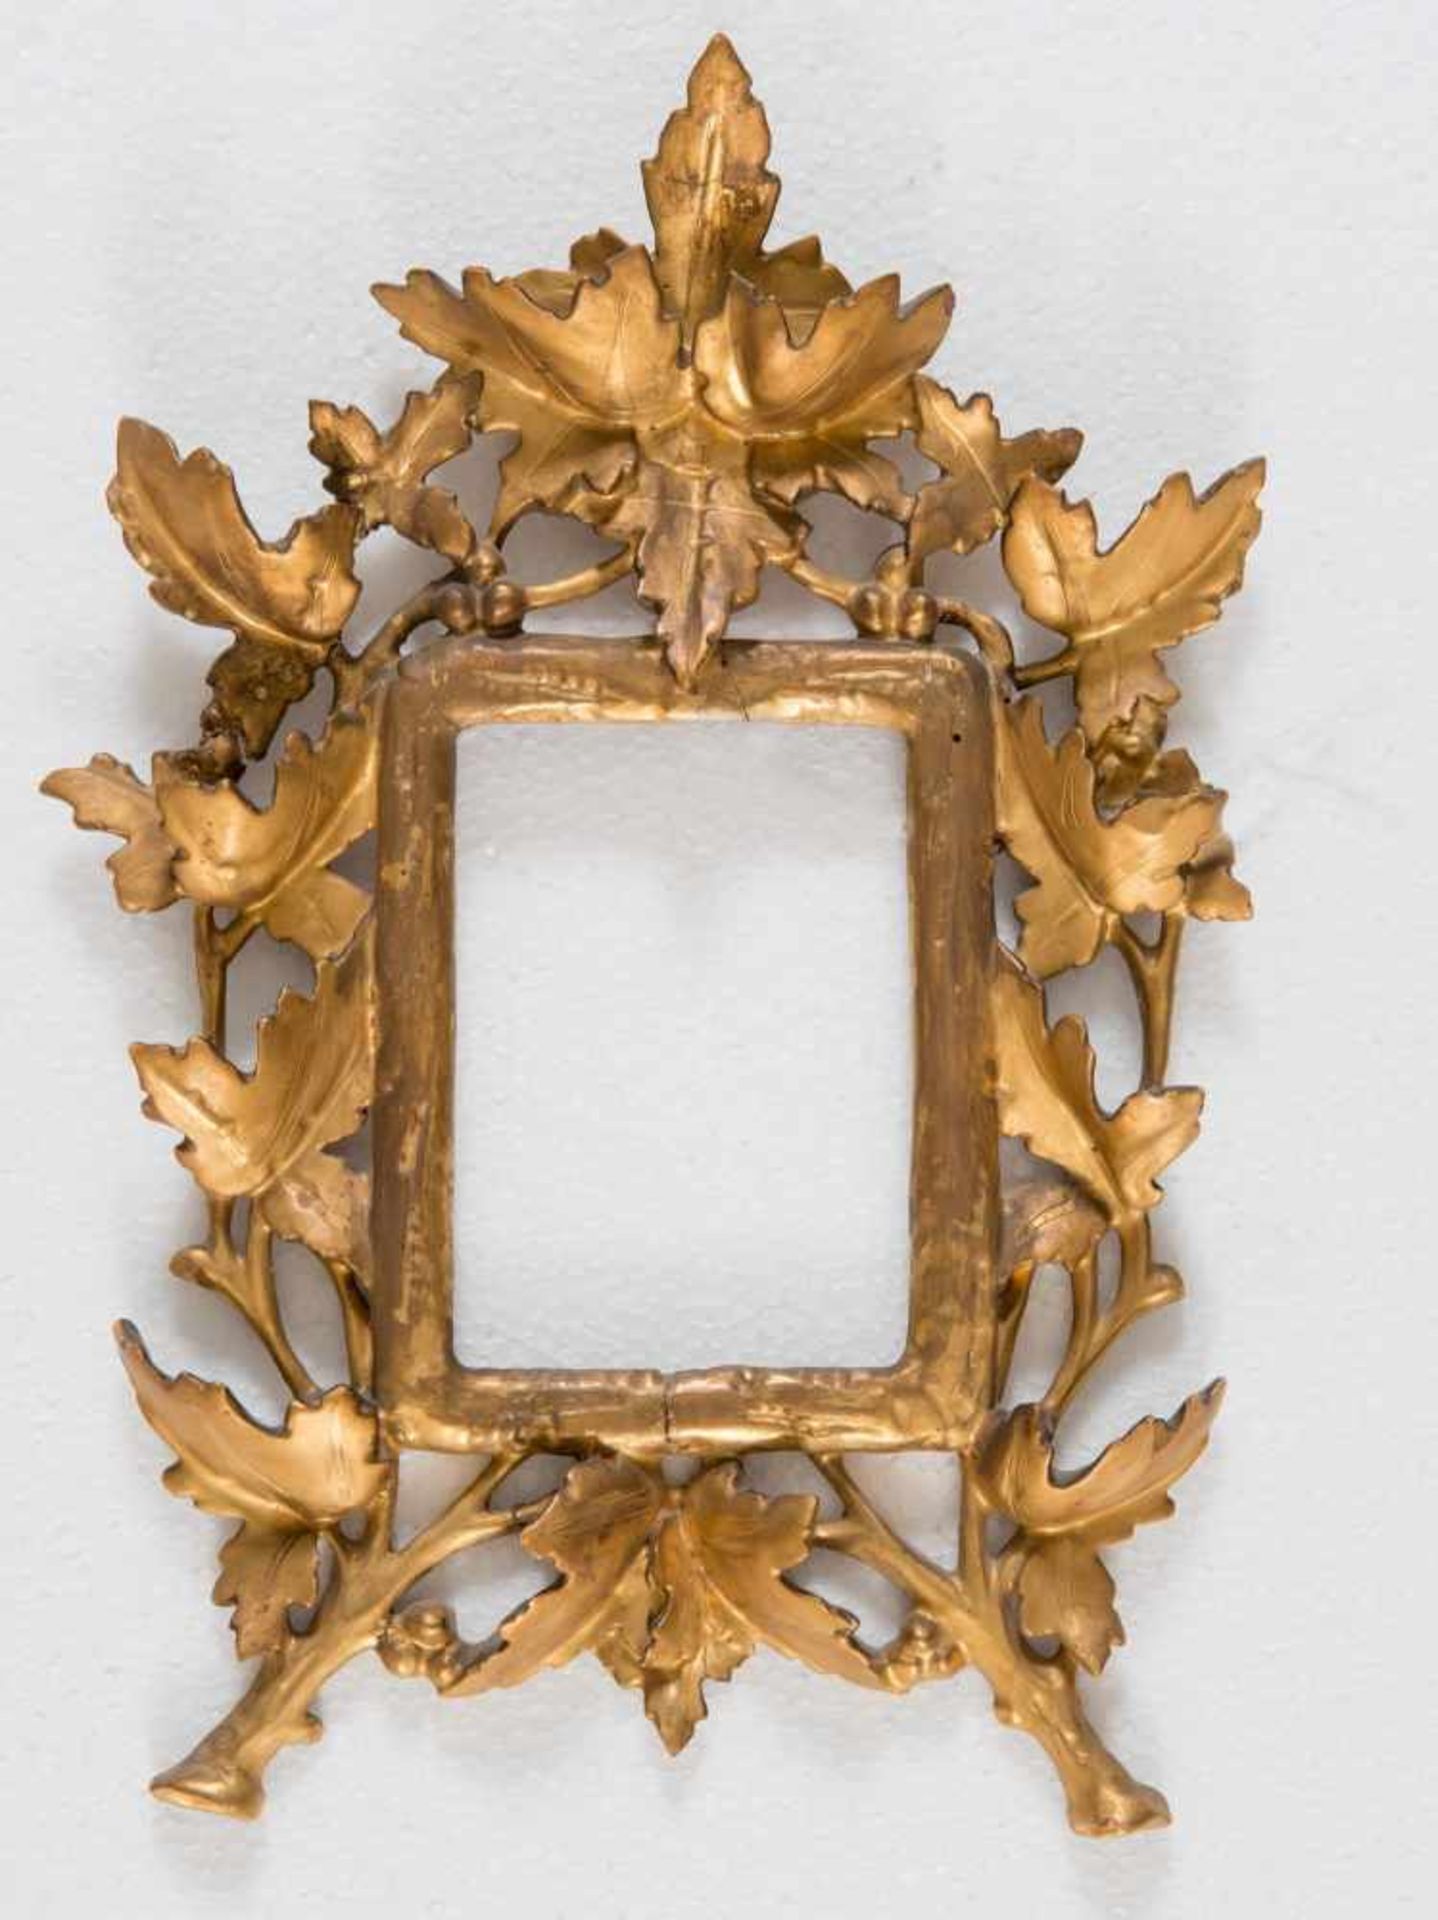 CORNICE, fine del XIX secolo. Realizzata in legno intagliato e dorato. Presenta motivo a foglie d’